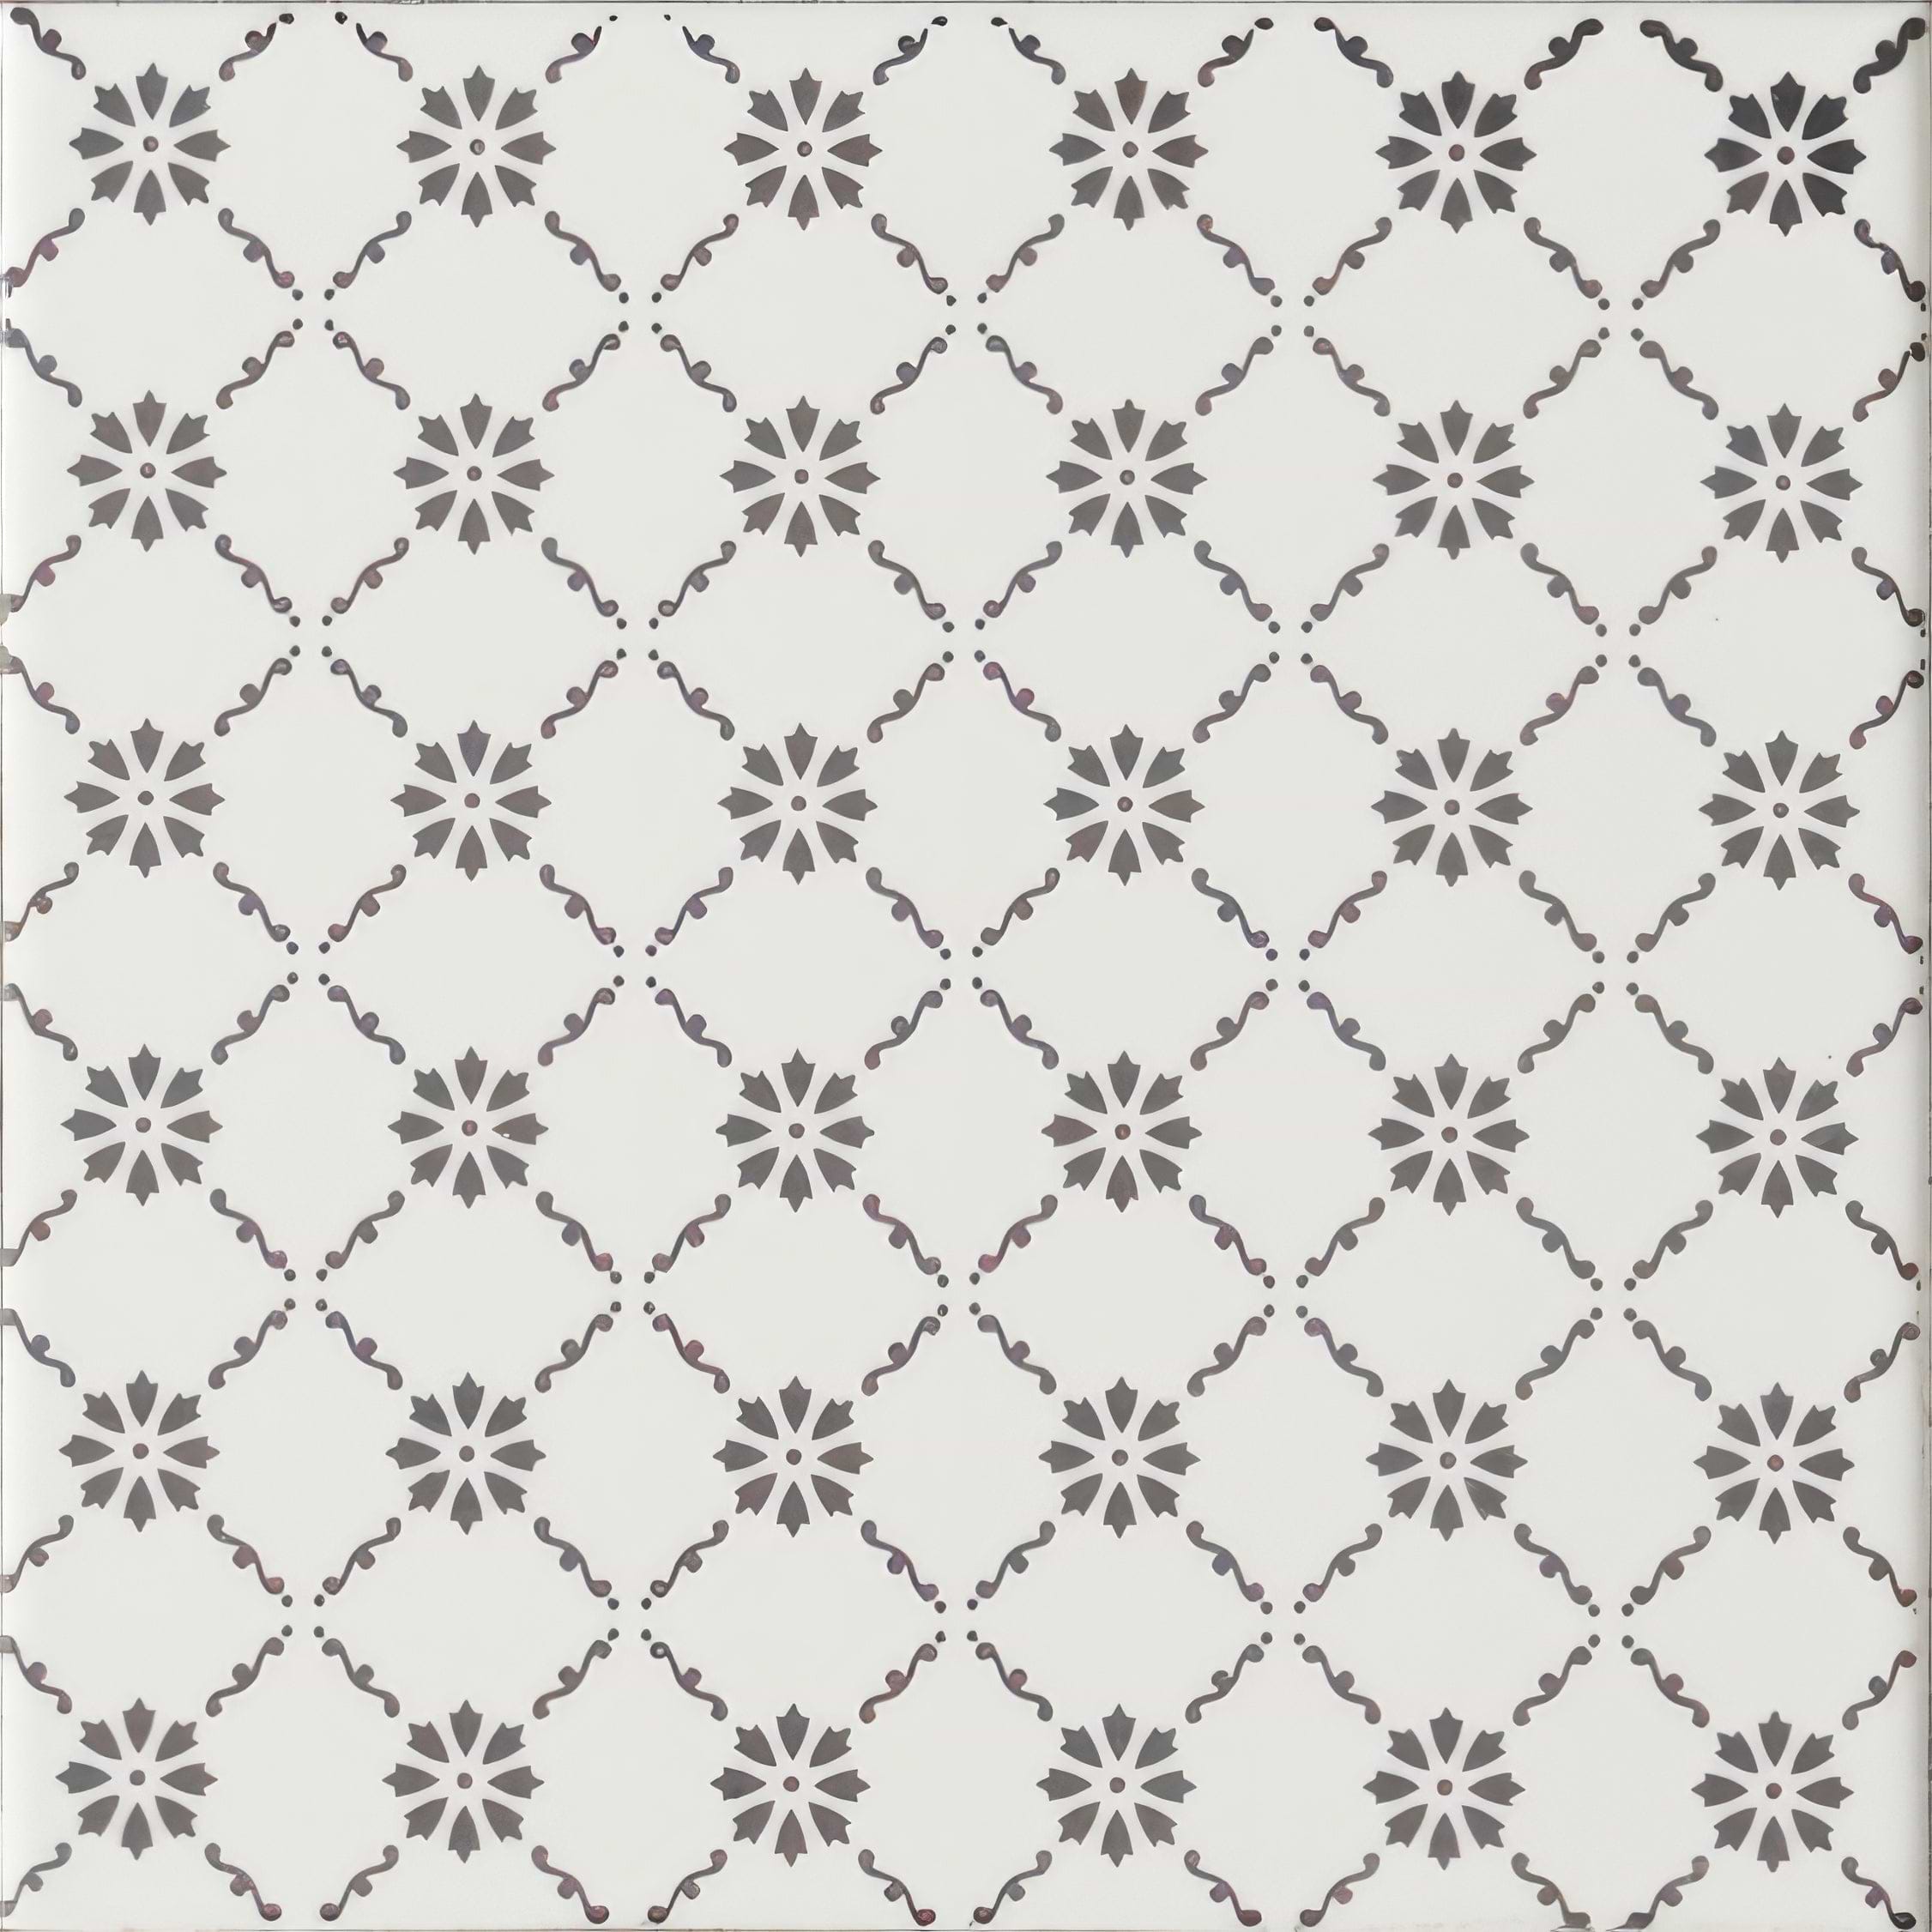 Floral Trellis Grey on Brilliant White - Hyperion Tiles